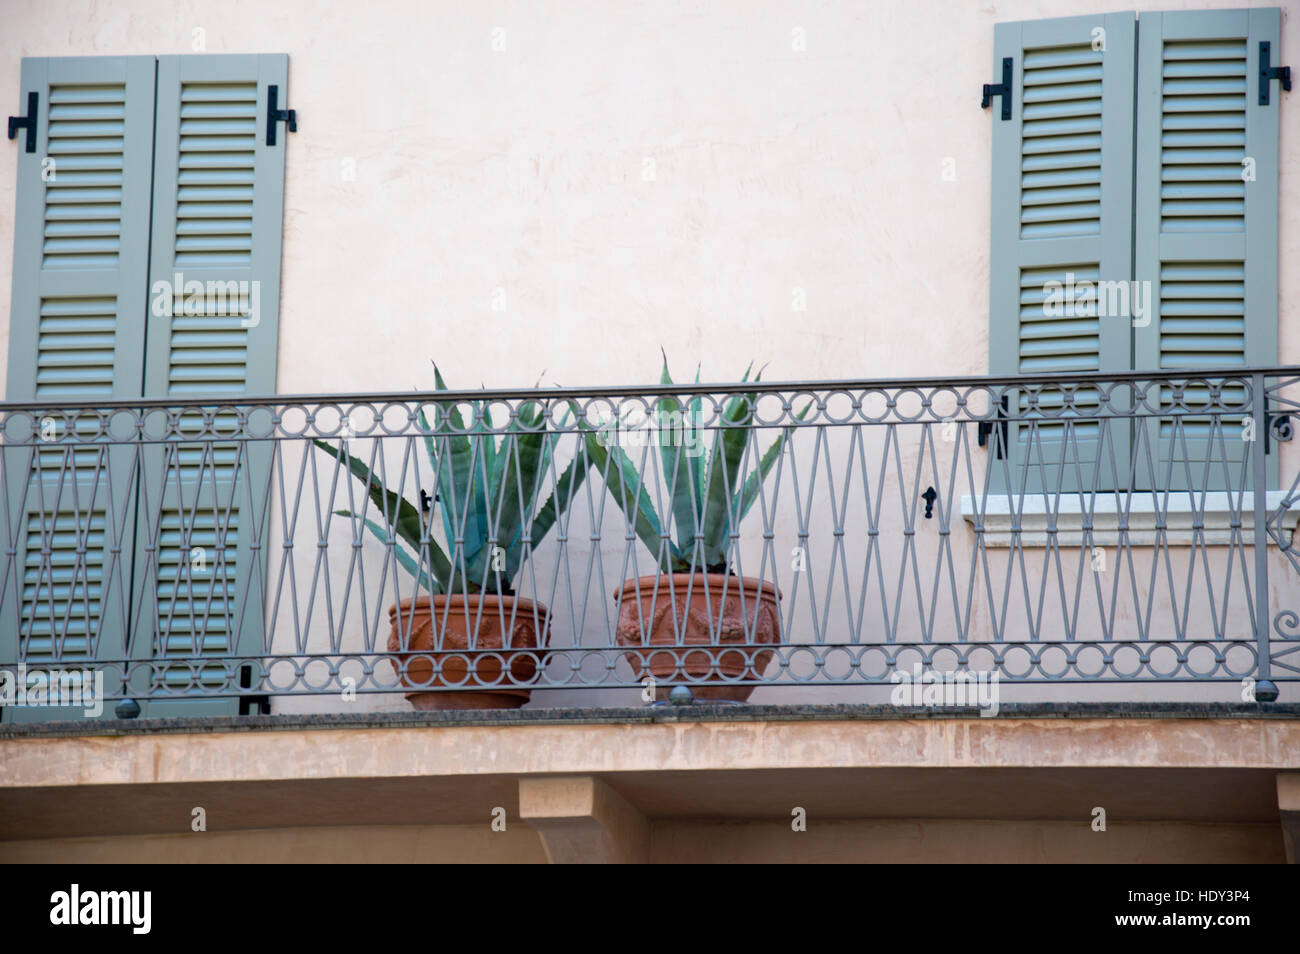 Vasi di terracotta balcone italia immagini e fotografie stock ad alta  risoluzione - Alamy